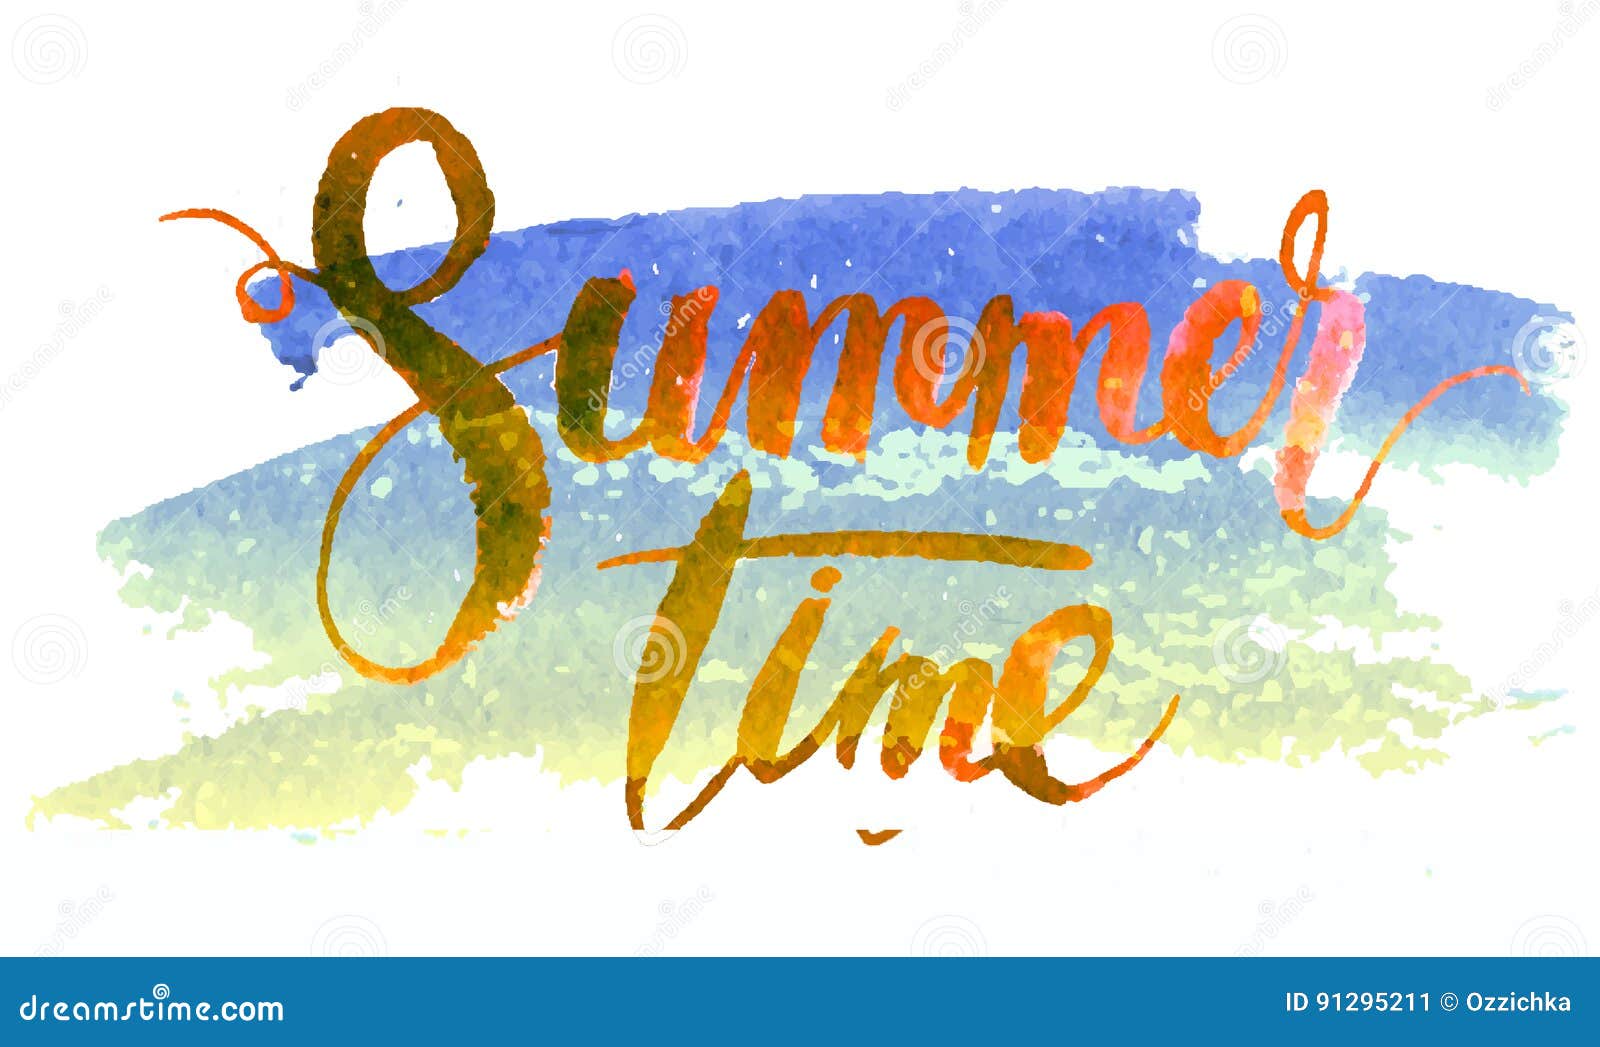 Hình nền mùa hè: Đừng bỏ lỡ cơ hội đem mùa hè đến với máy tính của bạn với các hình nền tuyệt đẹp từ chúng tôi! Những hình ảnh nắng sáng, bãi biển tuyệt đẹp, hoa cỏ rực rỡ, sẽ giúp bạn luôn cảm thấy sảng khoái và tự tin cho mỗi ngày mới.